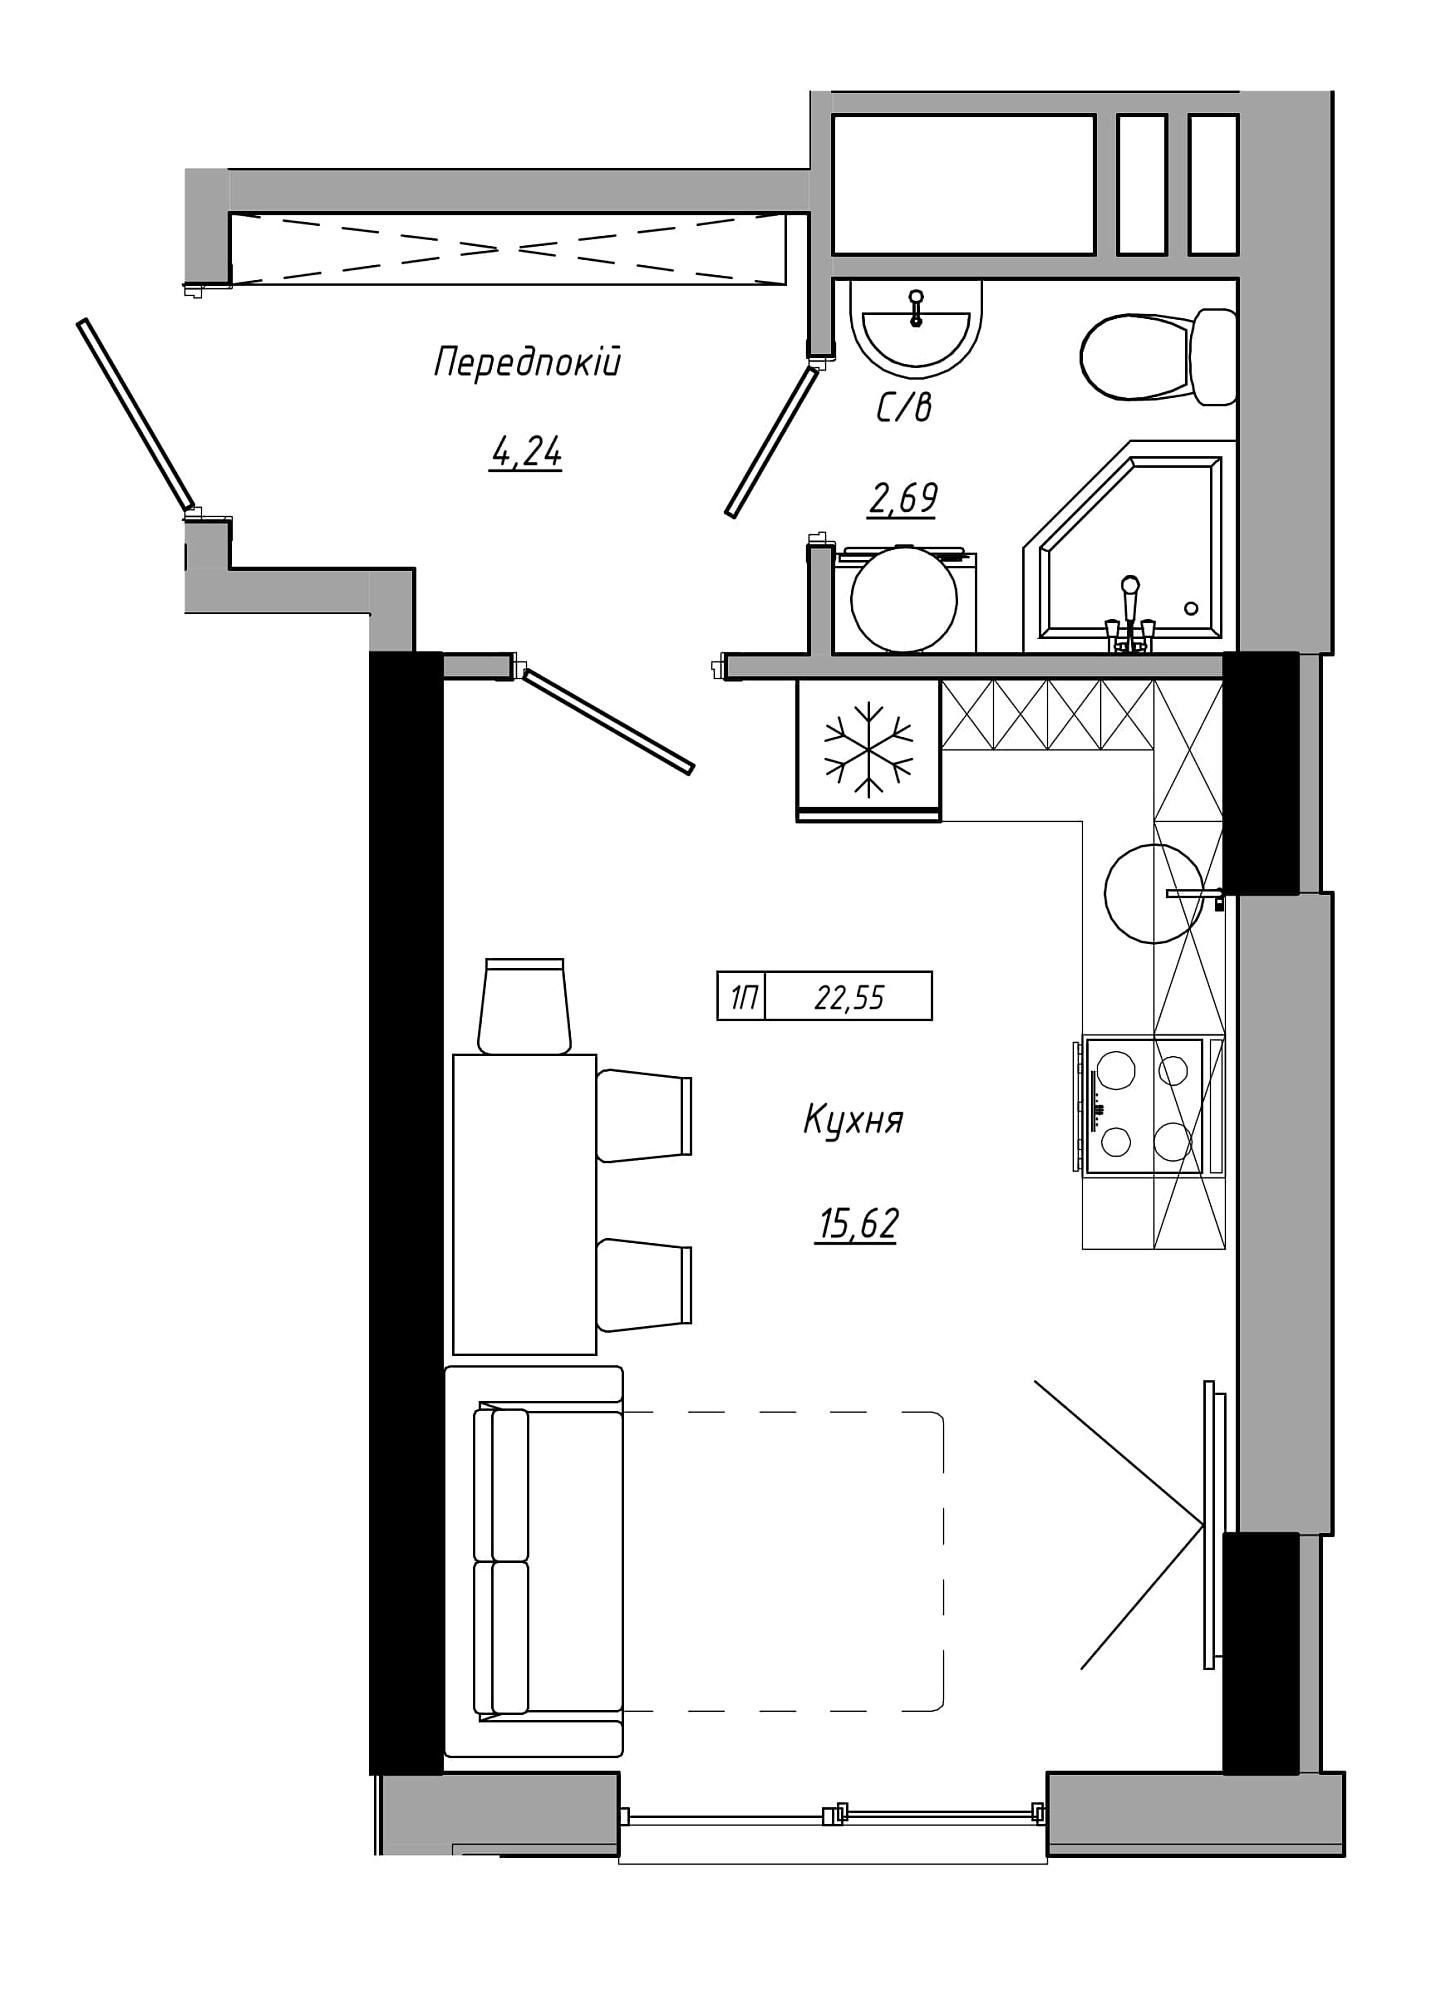 Планування Smart-квартира площею 22.55м2, AB-21-05/00018.